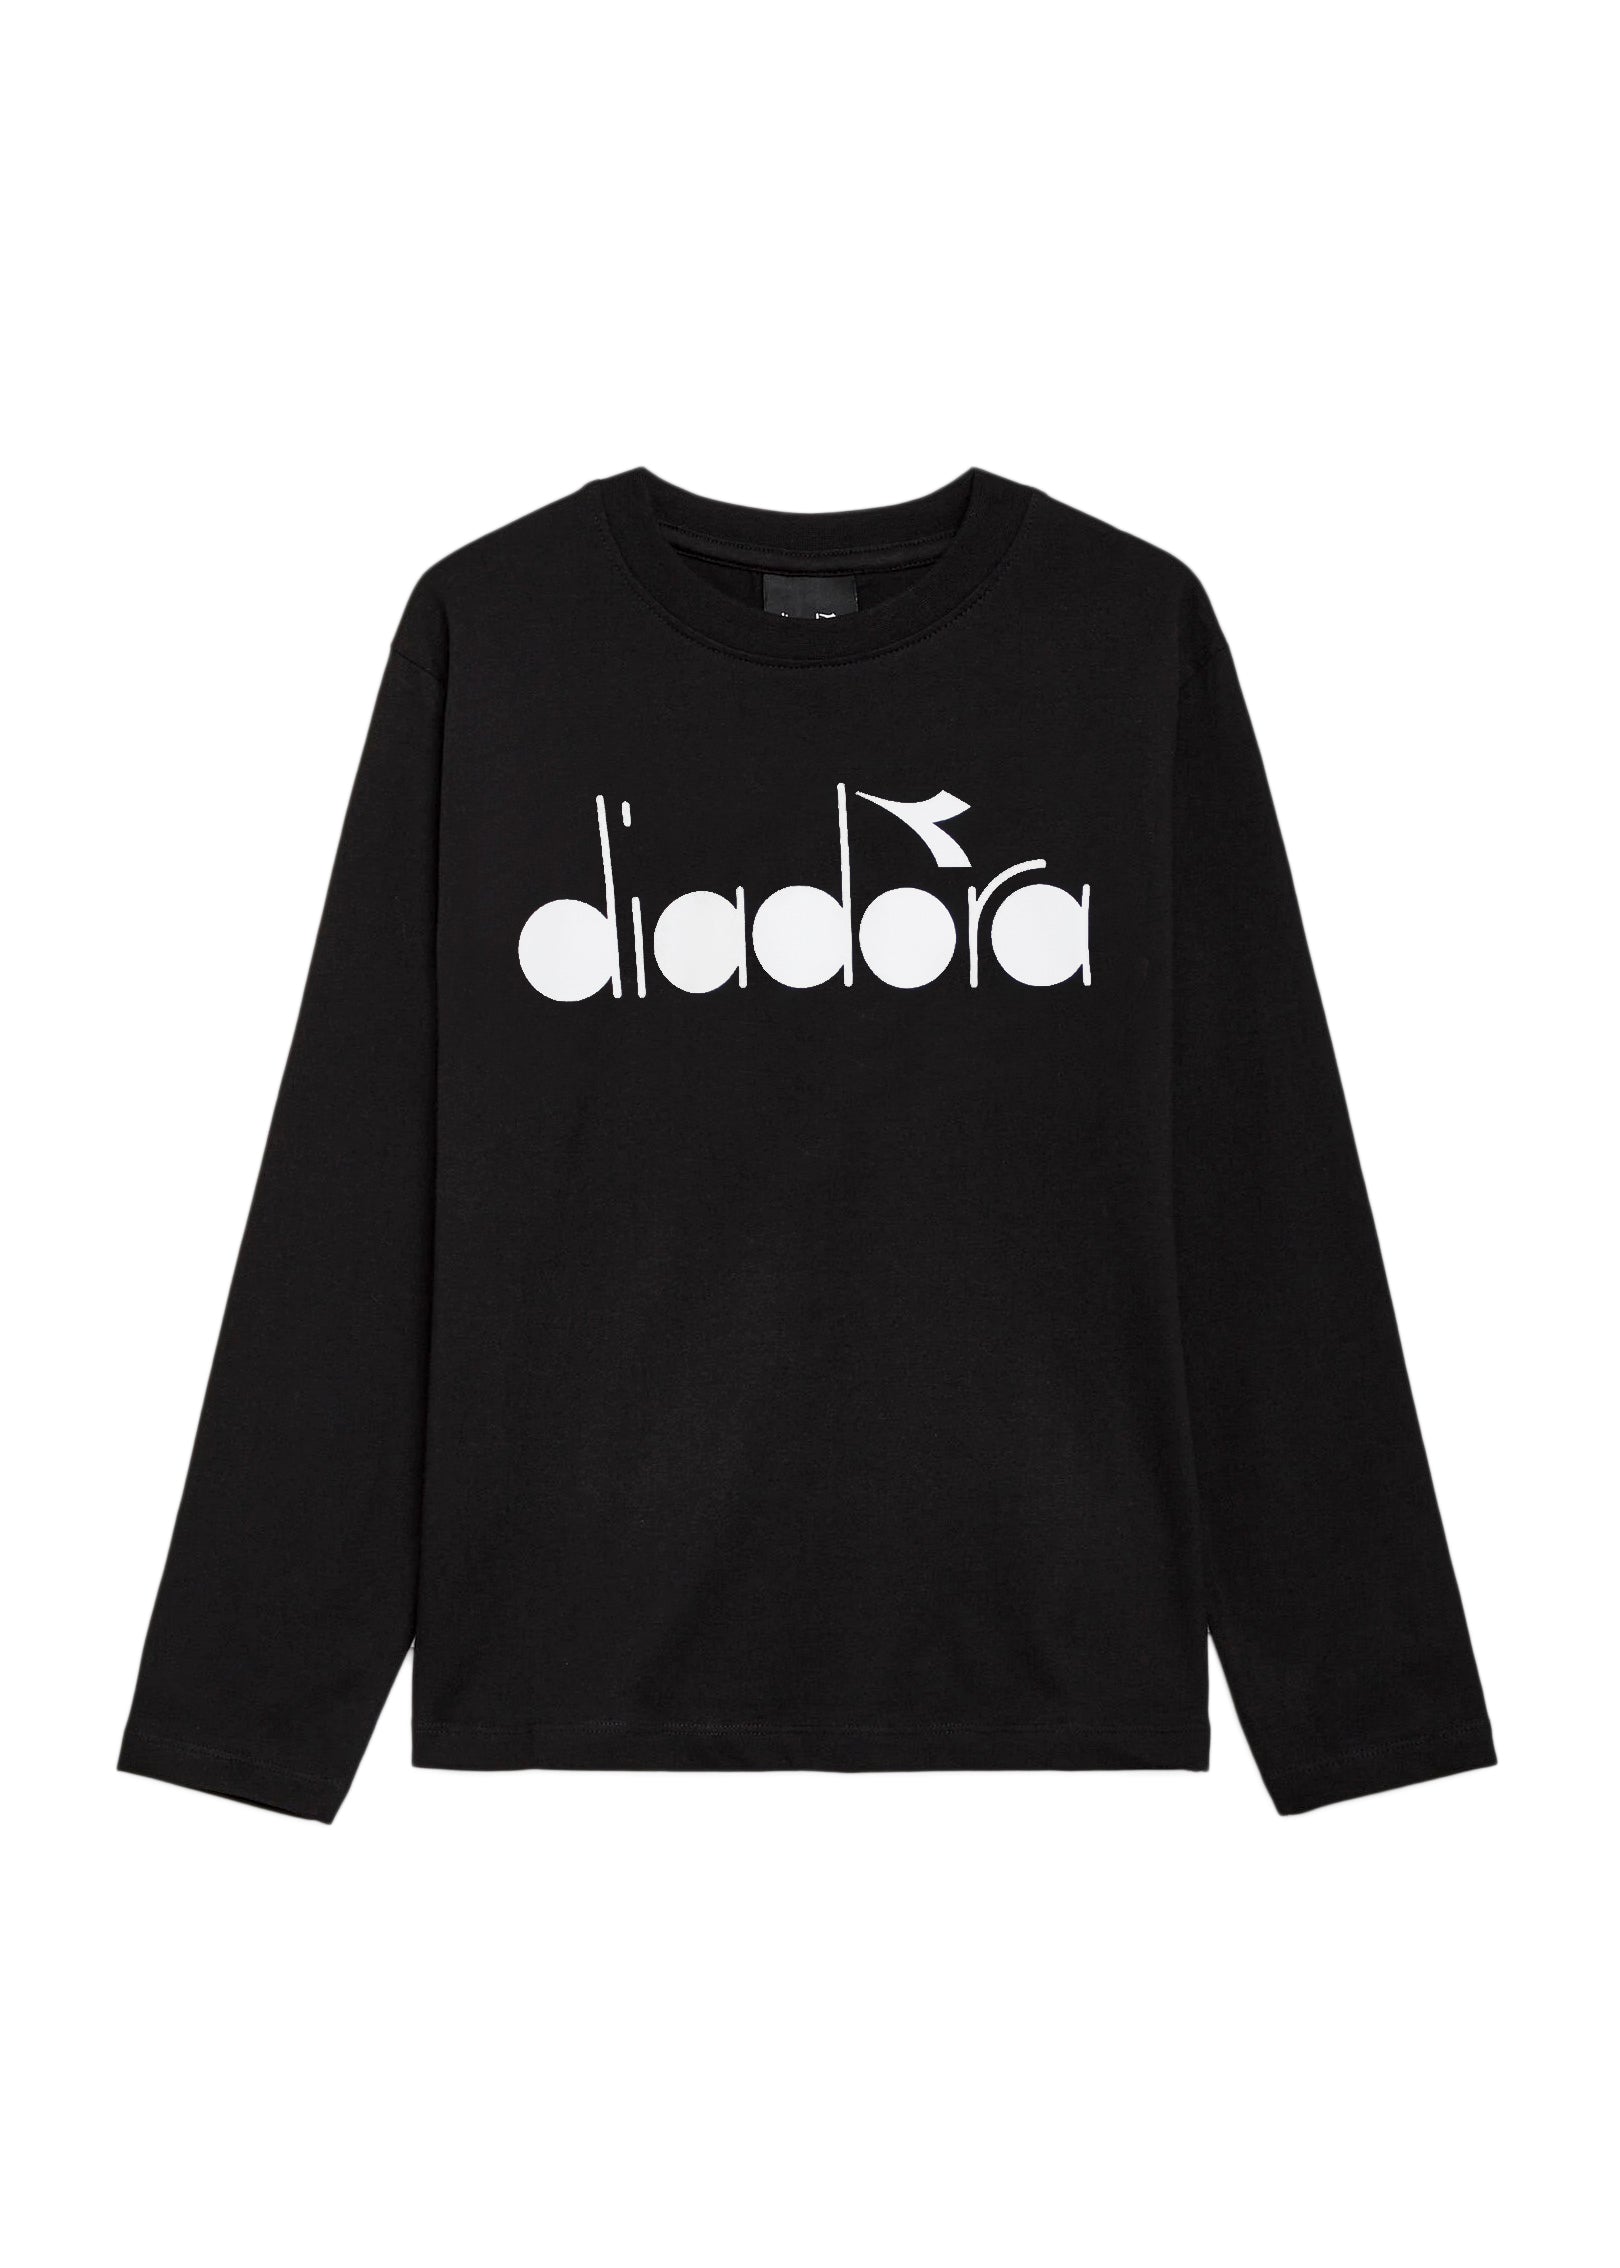 Diadora Kids T-Shirt: Maniche Lunghe Nero con Logo - Stile Sportivo per Bambini